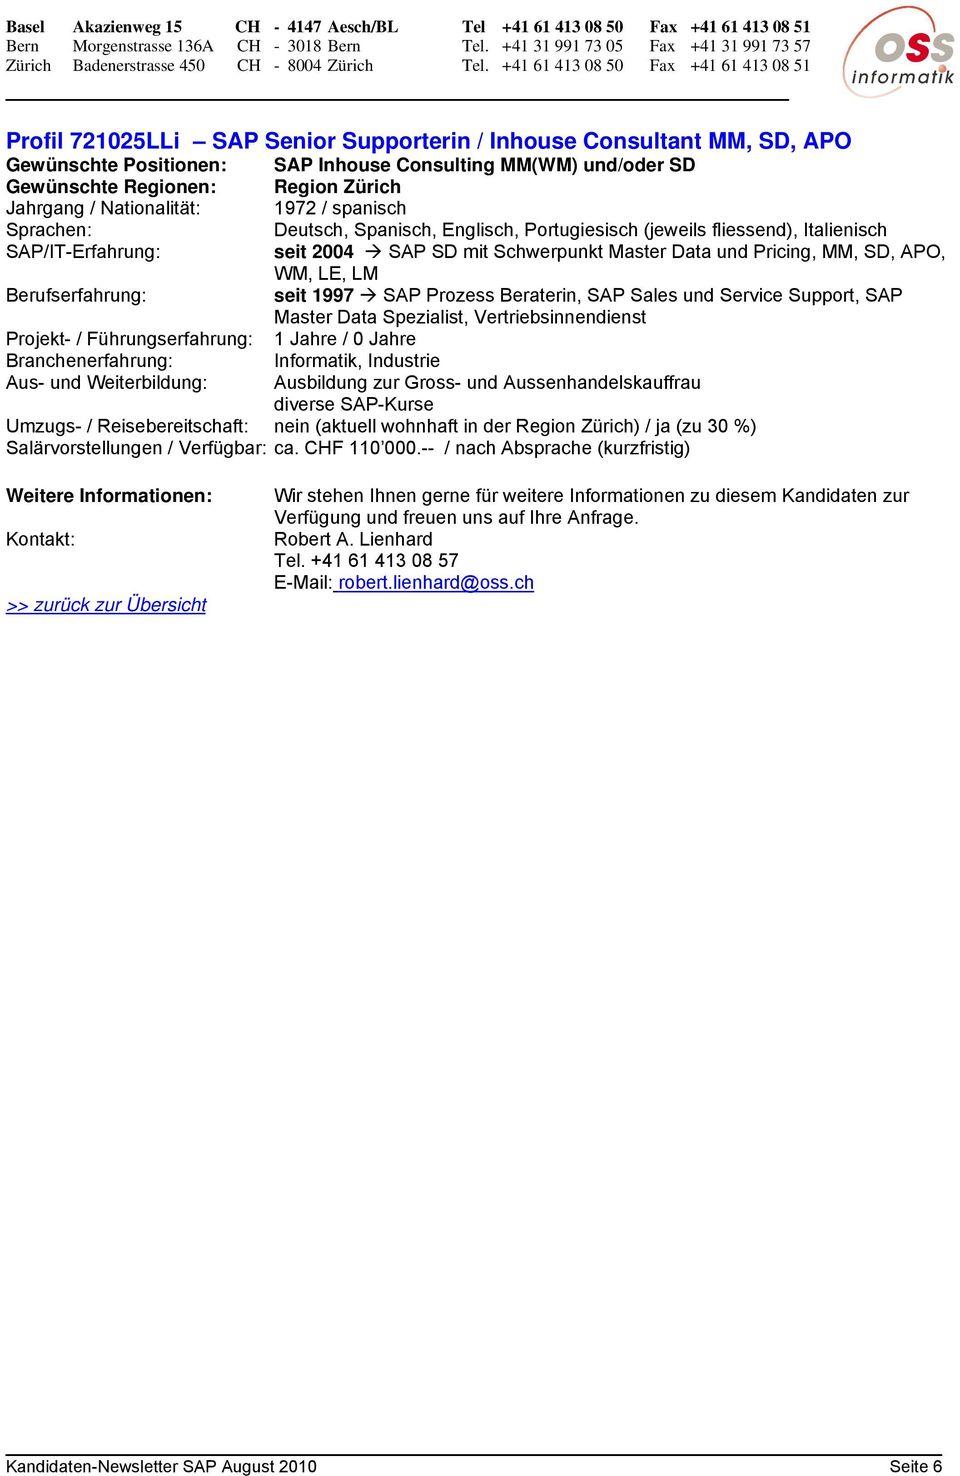 1997 SAP Prozess Beraterin, SAP Sales und Service Support, SAP Master Data Spezialist, Vertriebsinnendienst Projekt- / Führungserfahrung: 1 Jahre / 0 Jahre Informatik, Industrie Aus- und